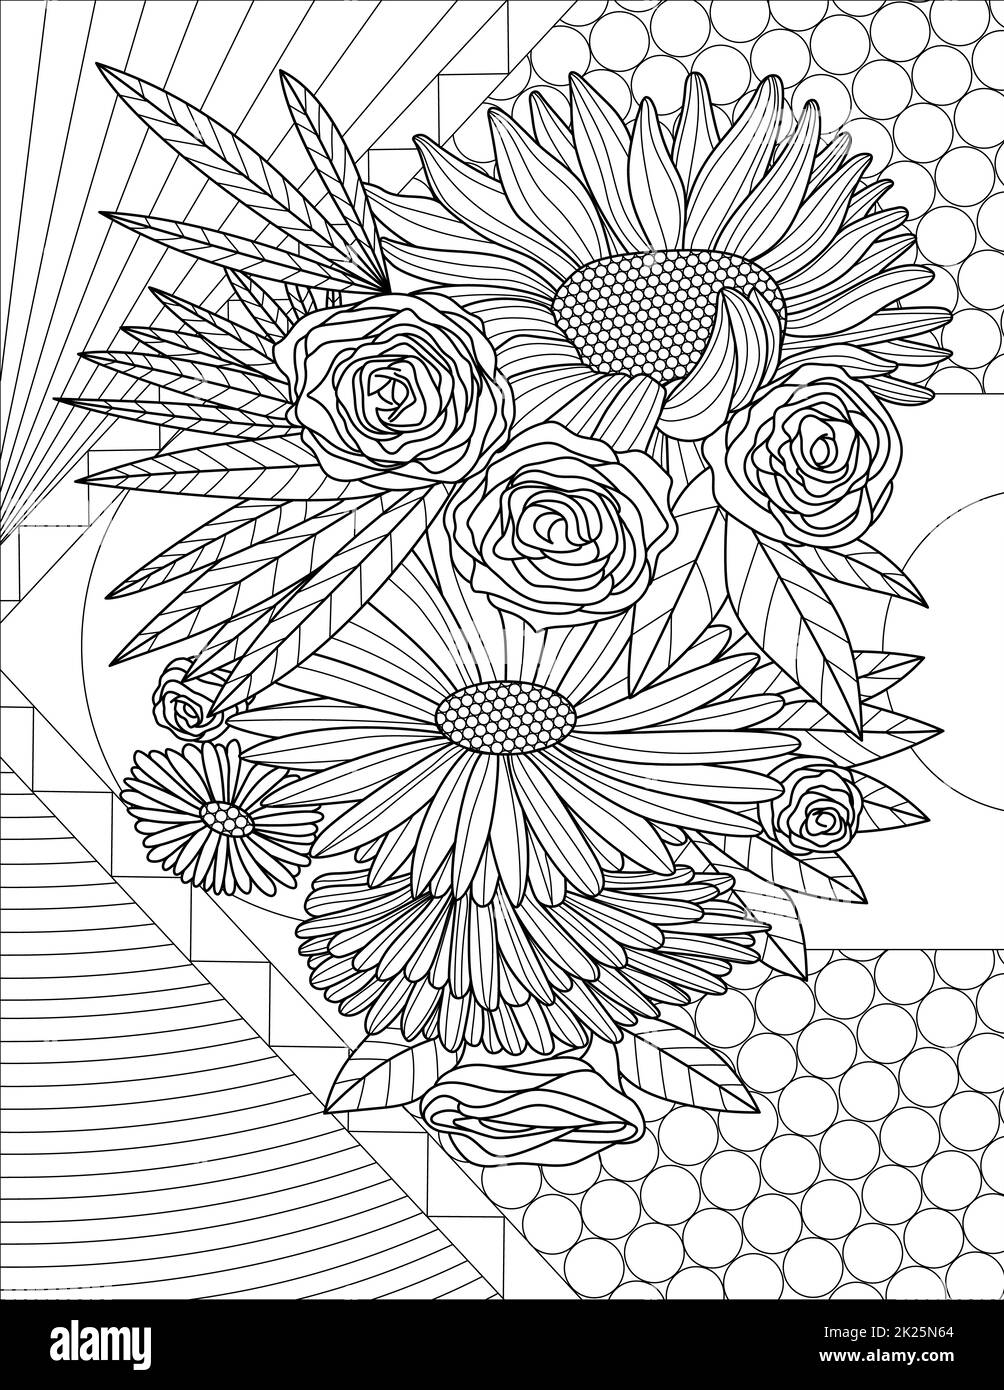 Verschiedene Blumen Linienzeichnung iwth Geometrischen Hintergrund Malbuch Idee Stockfoto